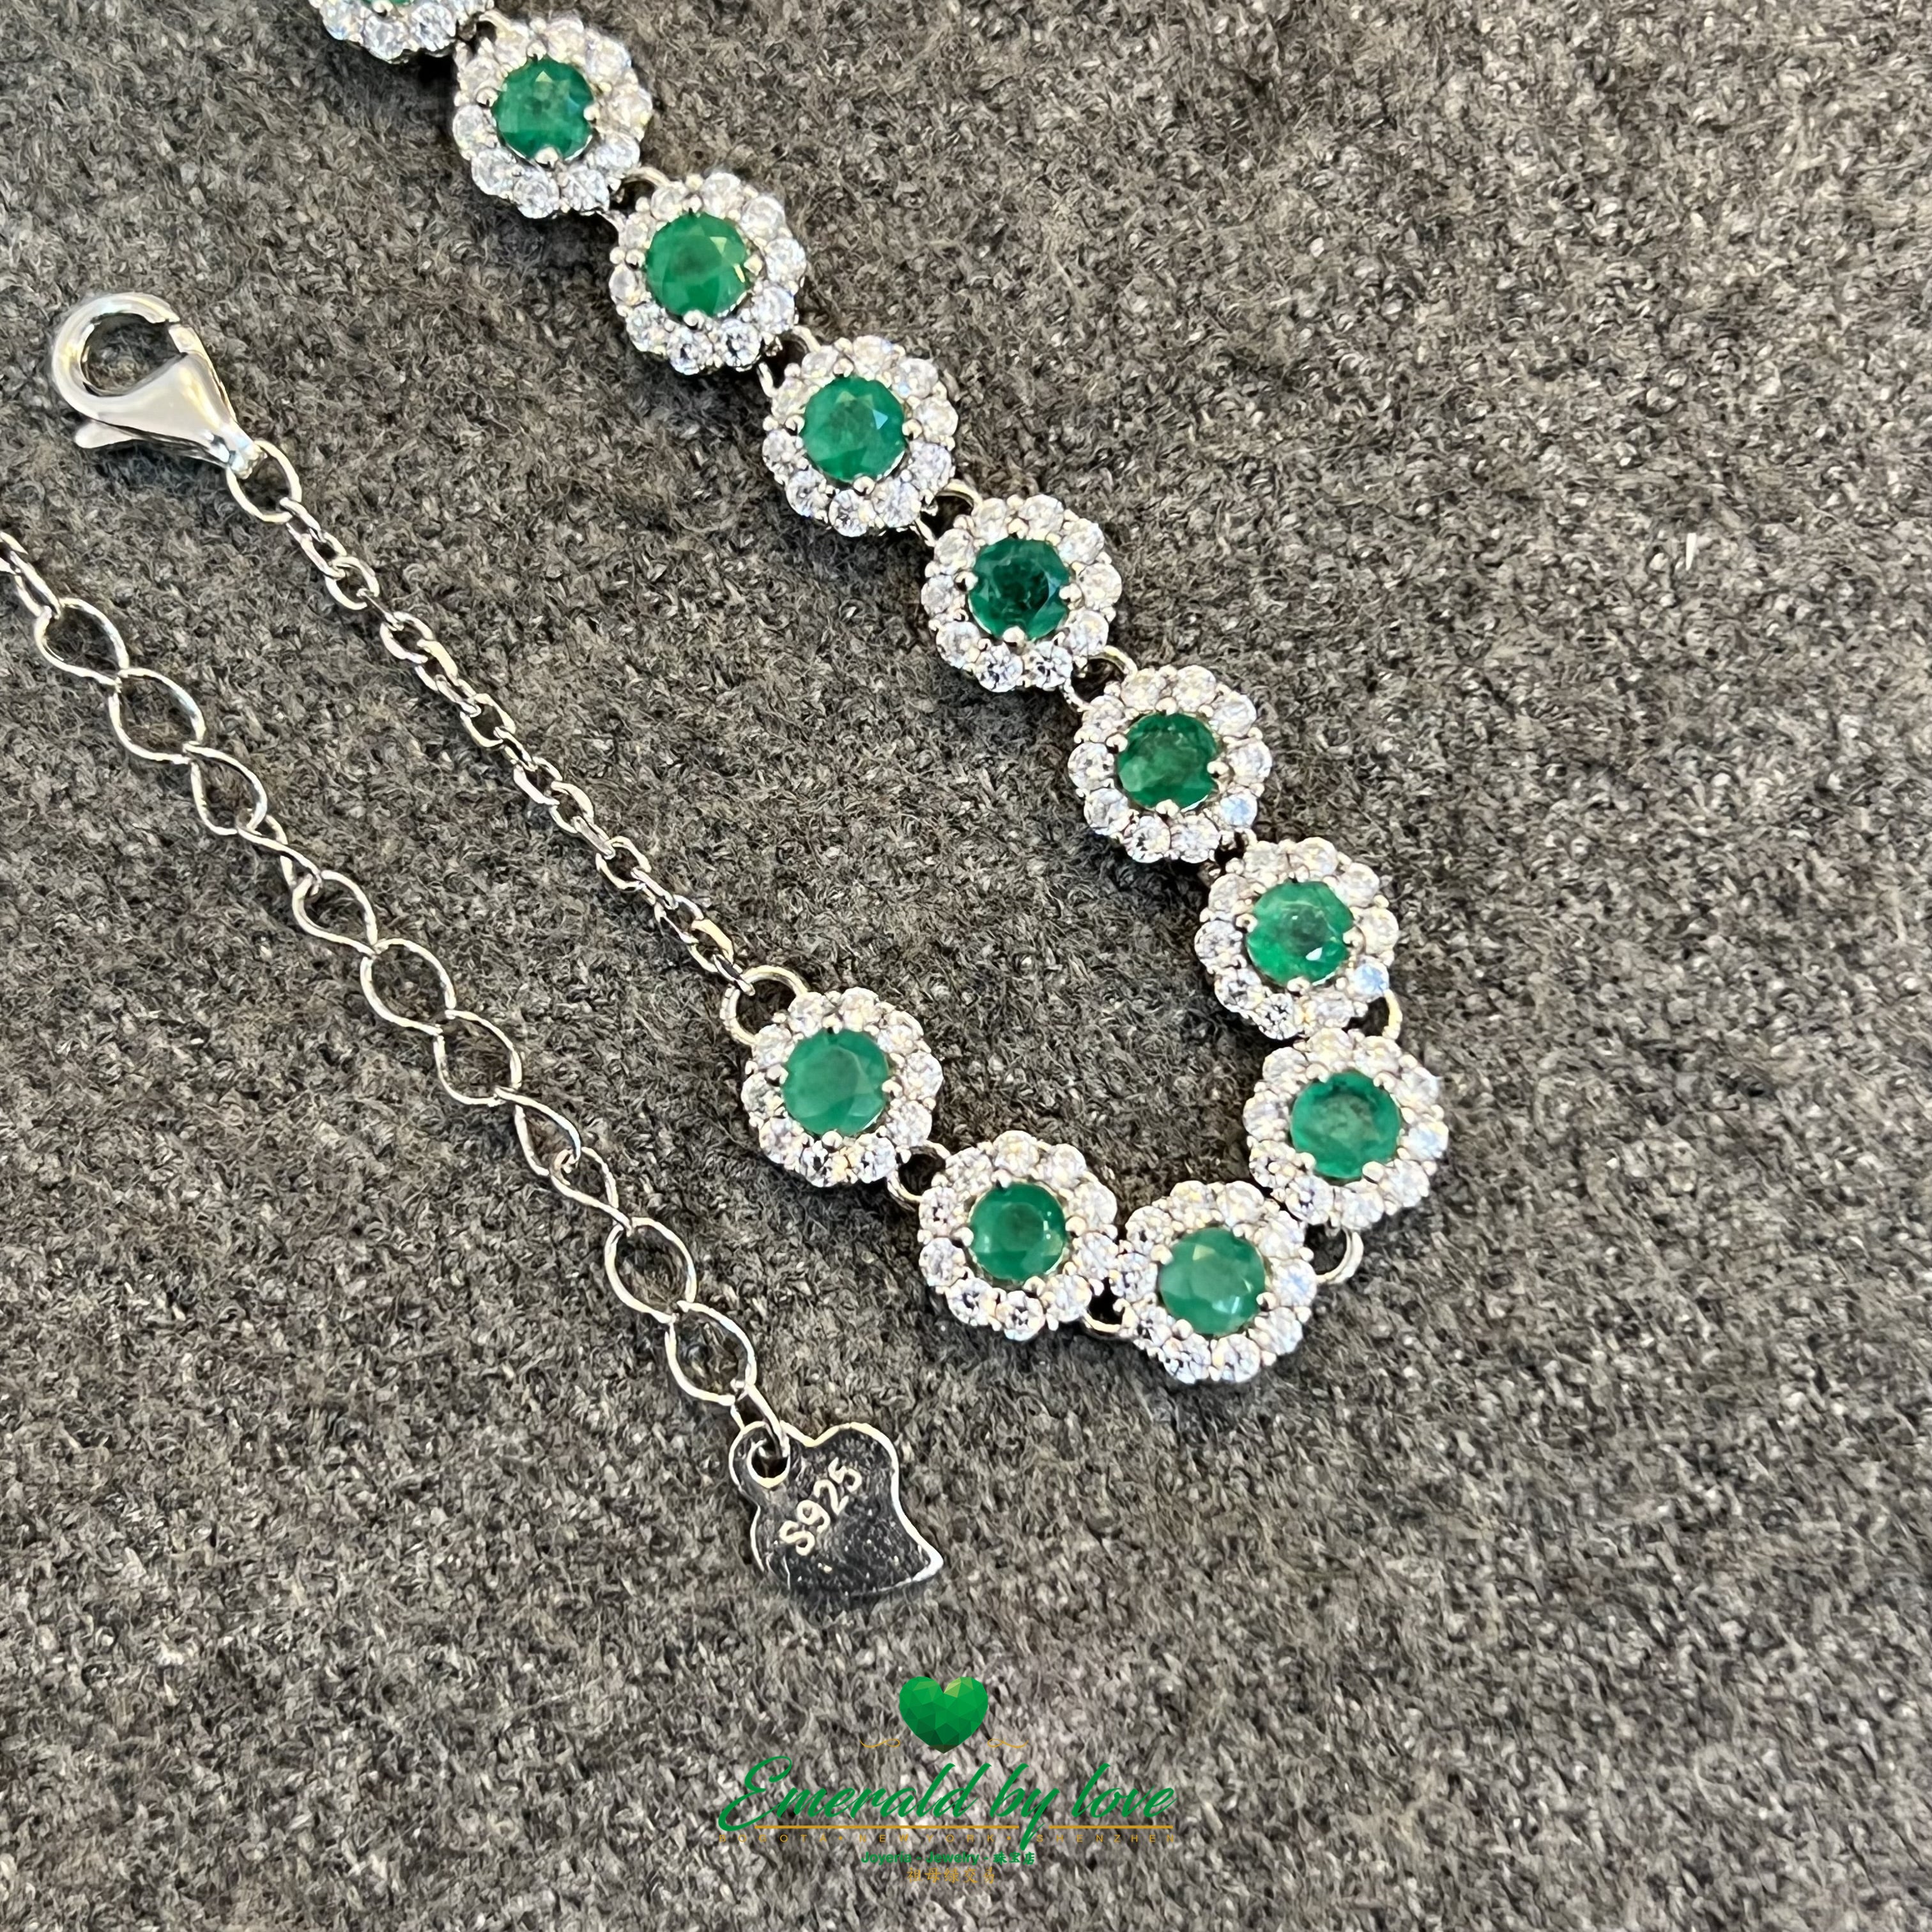 Colombian Emerald Silver Bracelet: Radiant Beauty on Your Wrist